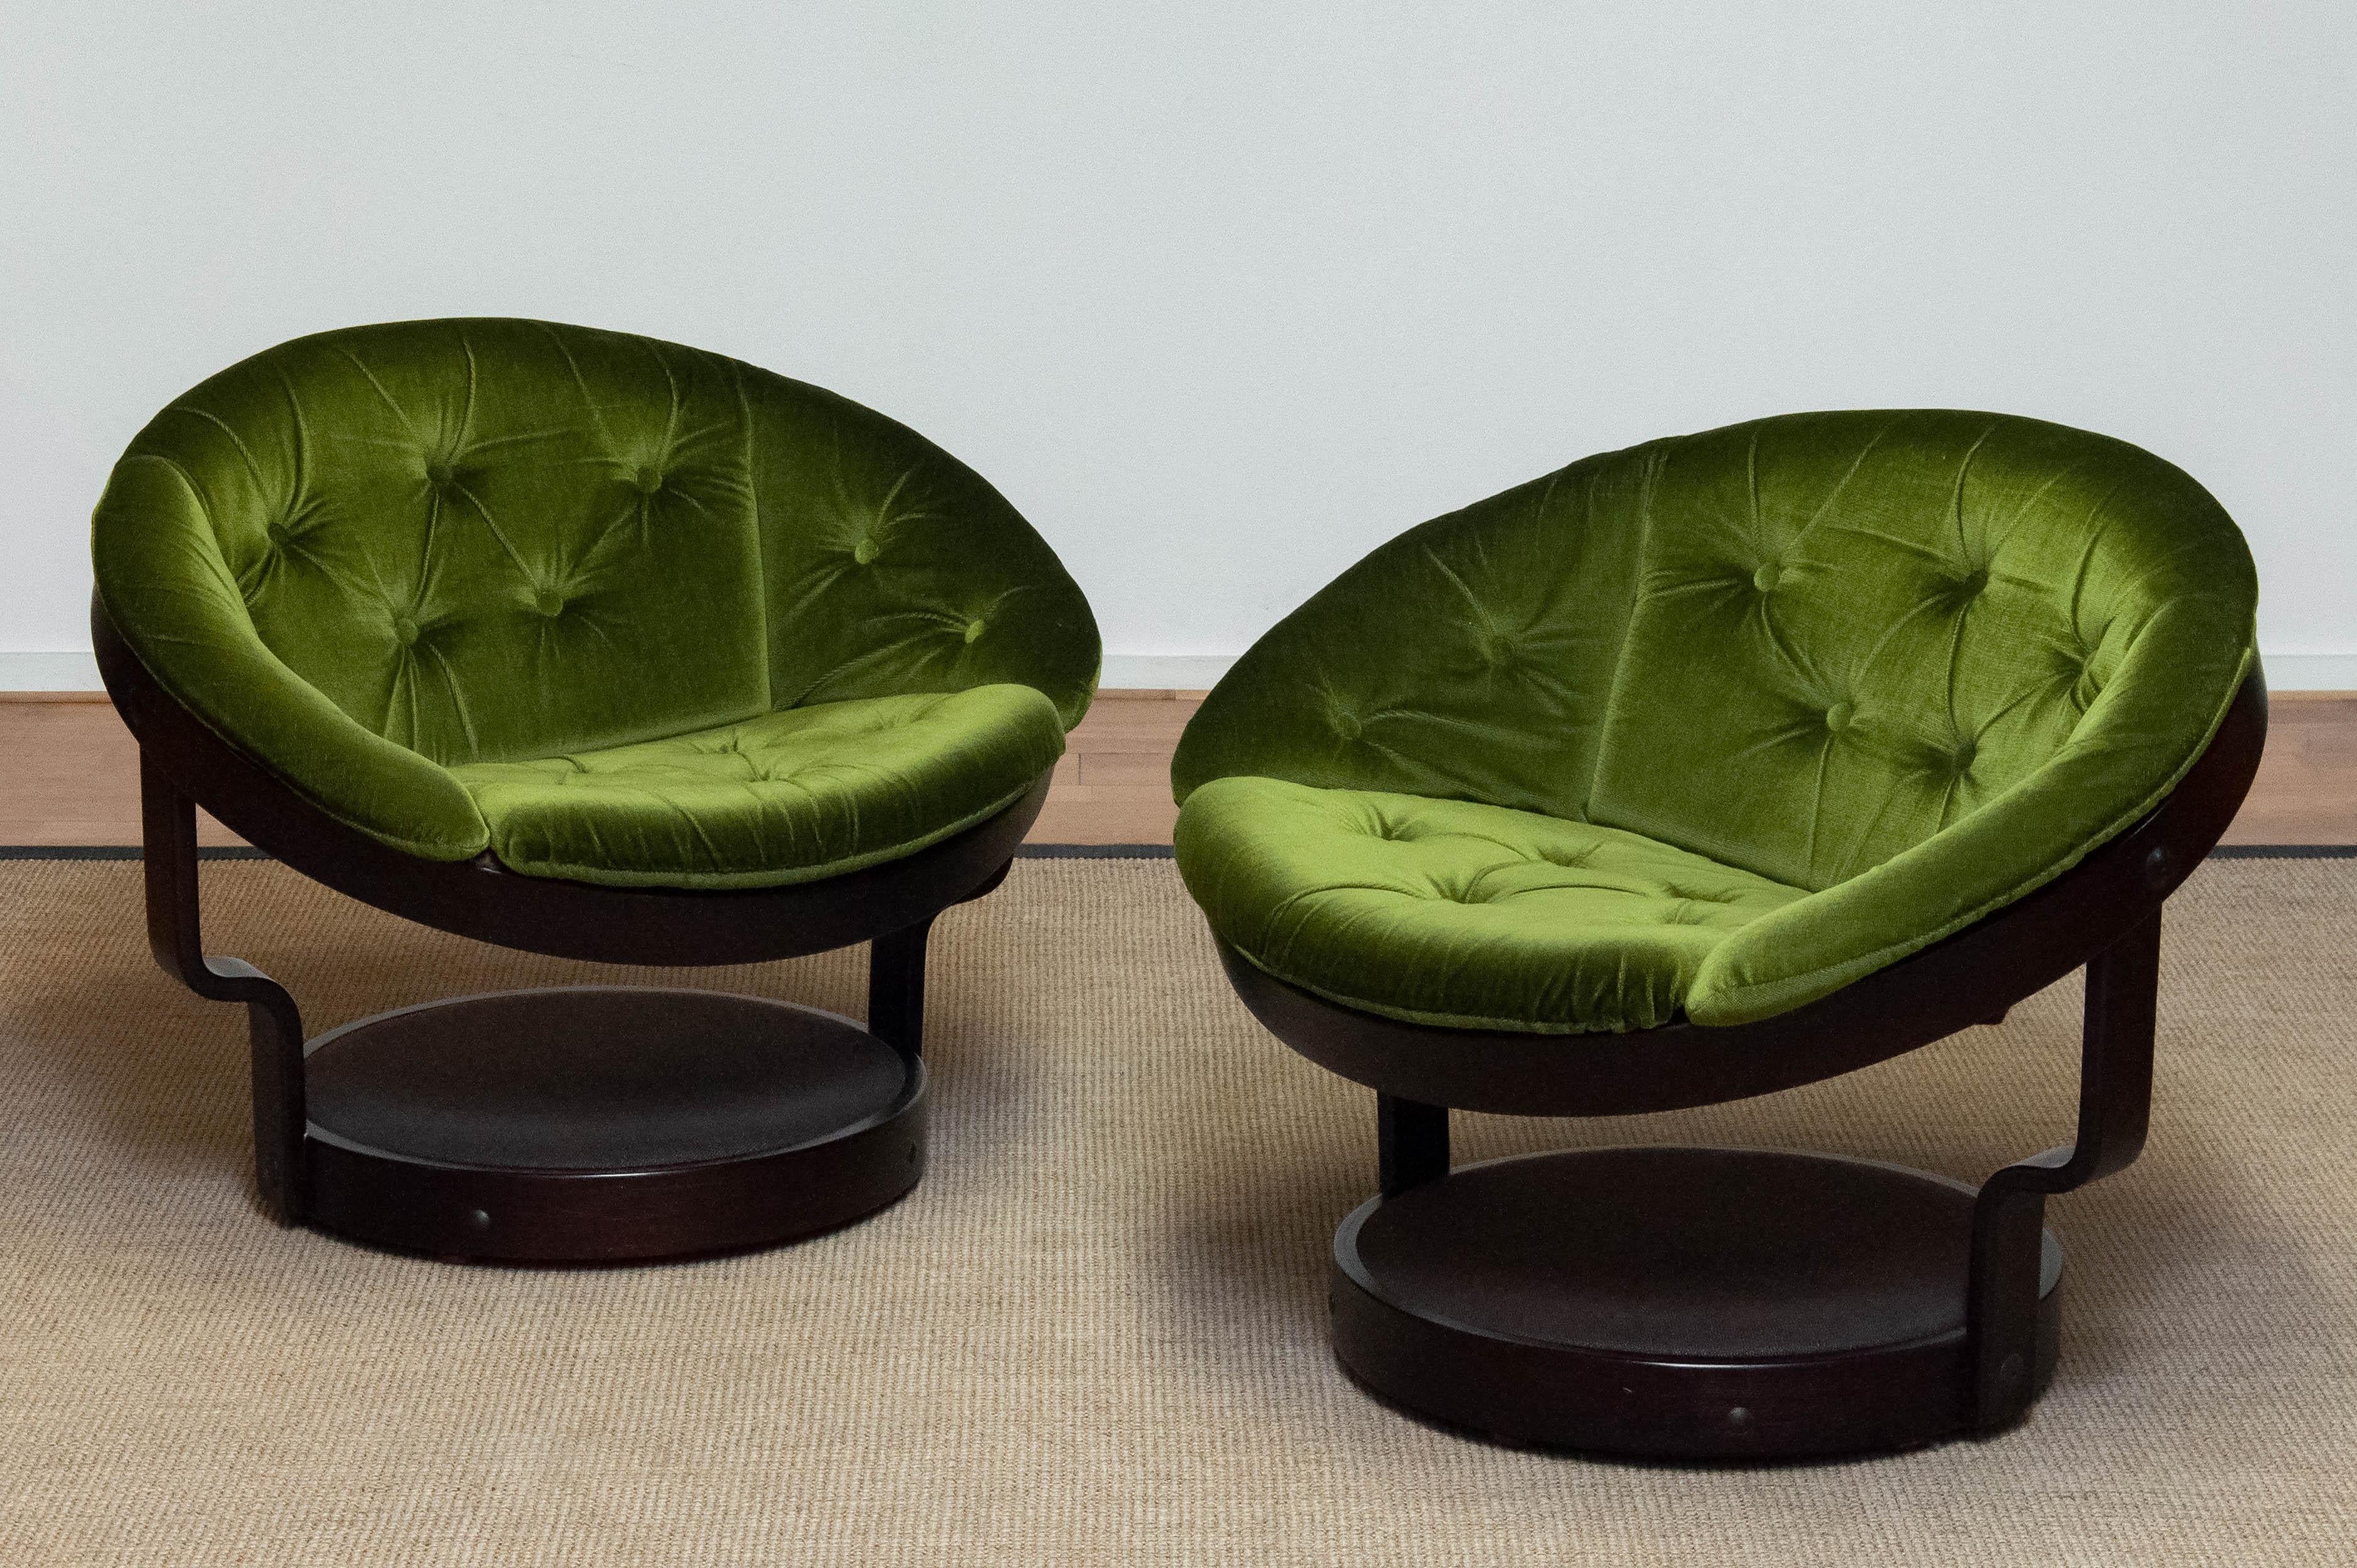 Magnifique ensemble de deux chaises de salon pivotantes en bois courbé moderne scandinave ' model Convair' par Oddmund Vad pour VAD Trevarefabrik en Norvège. Fabrice présente un cadre circulaire flottant en bois courbé et un support de sol avec des